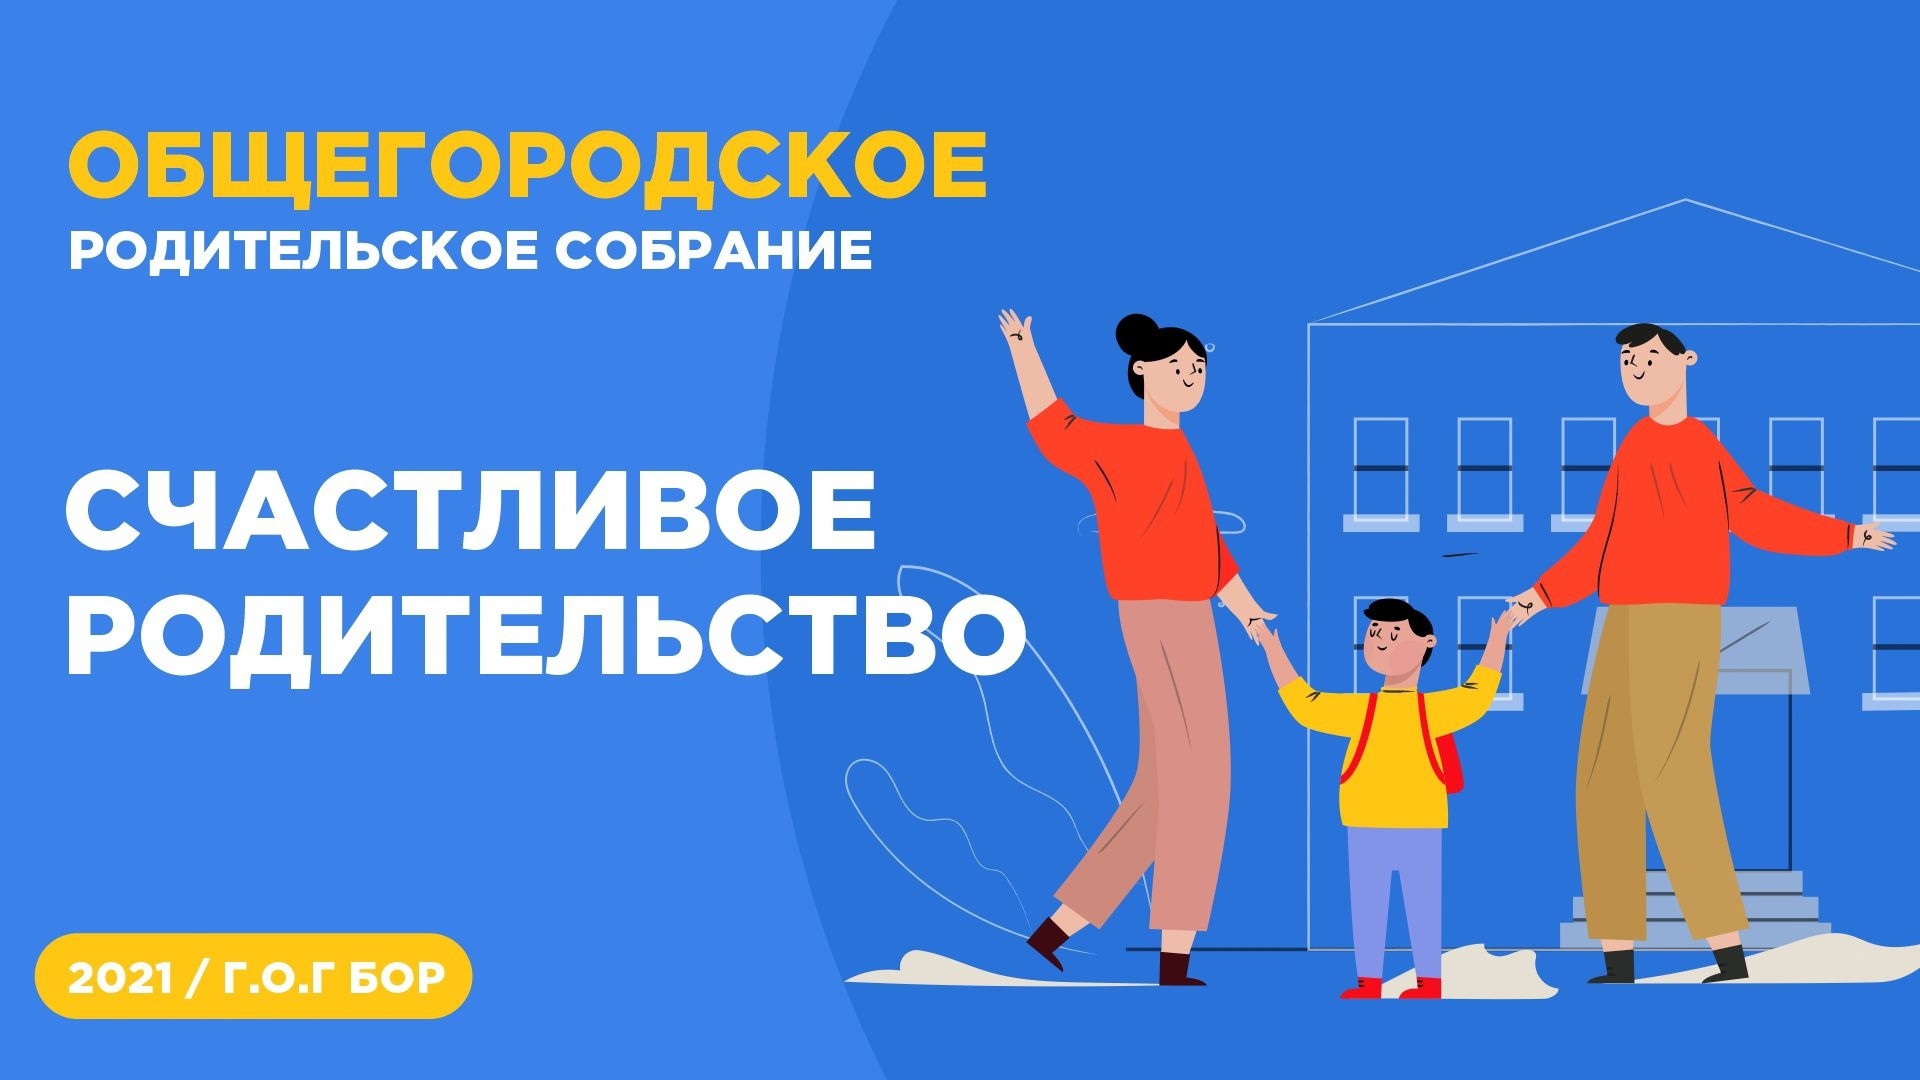 Активисты РДШ города Бор Нижегородской области и их родители приняли участие в Общегородском родительском собрании «Счастливое родительство»